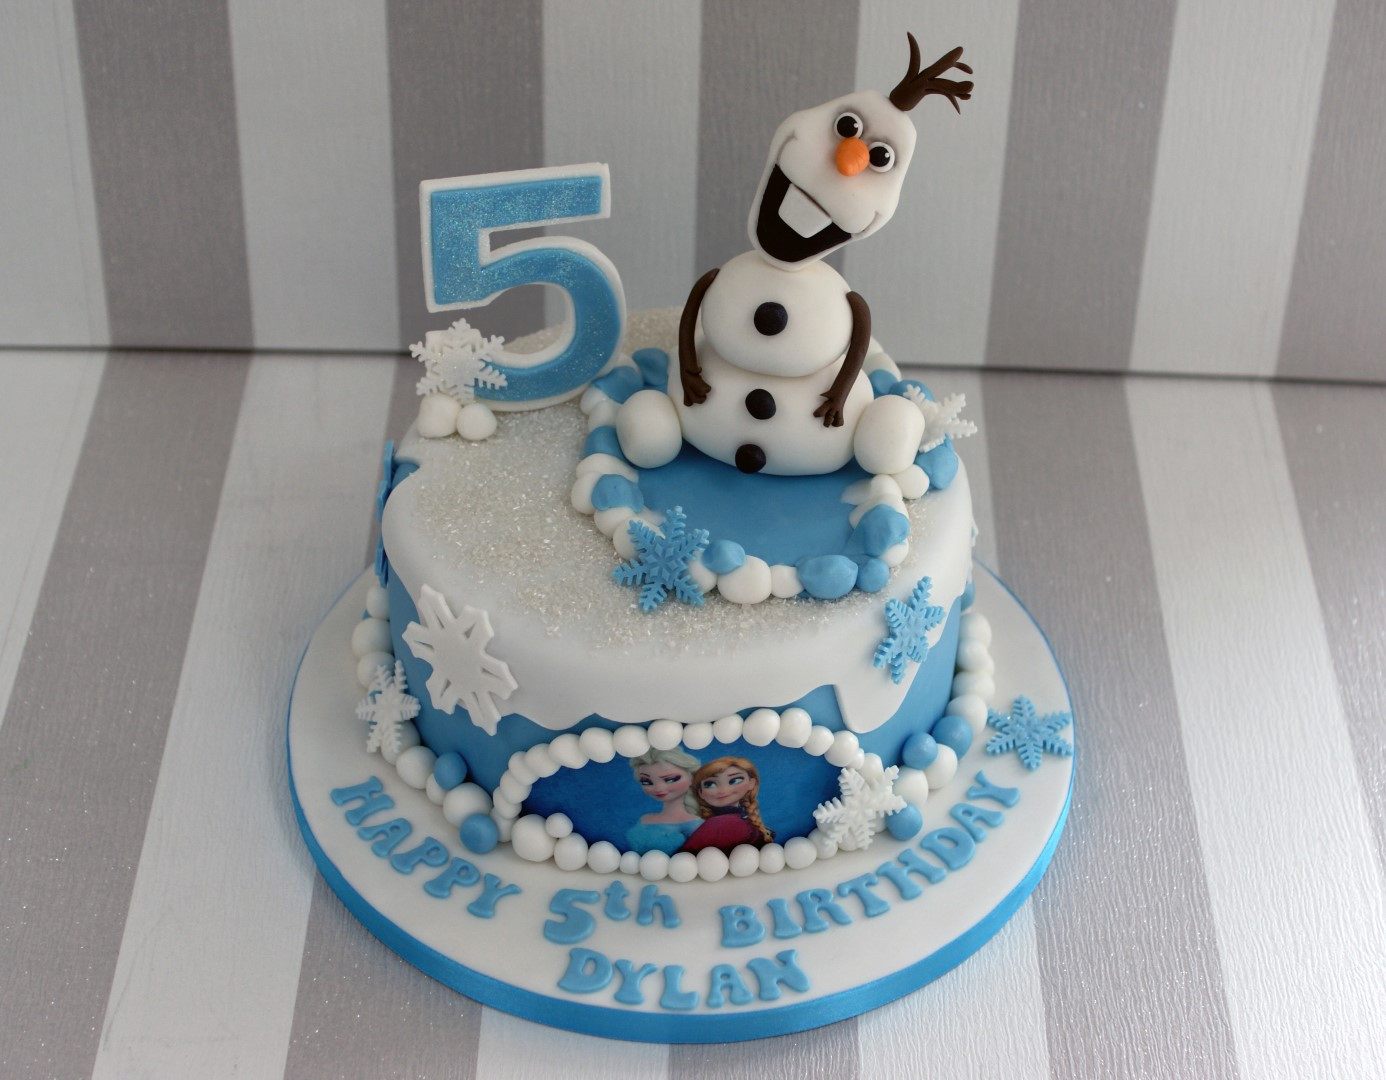 Olaf Birthday Cakes
 Olaf Birthday Cakes